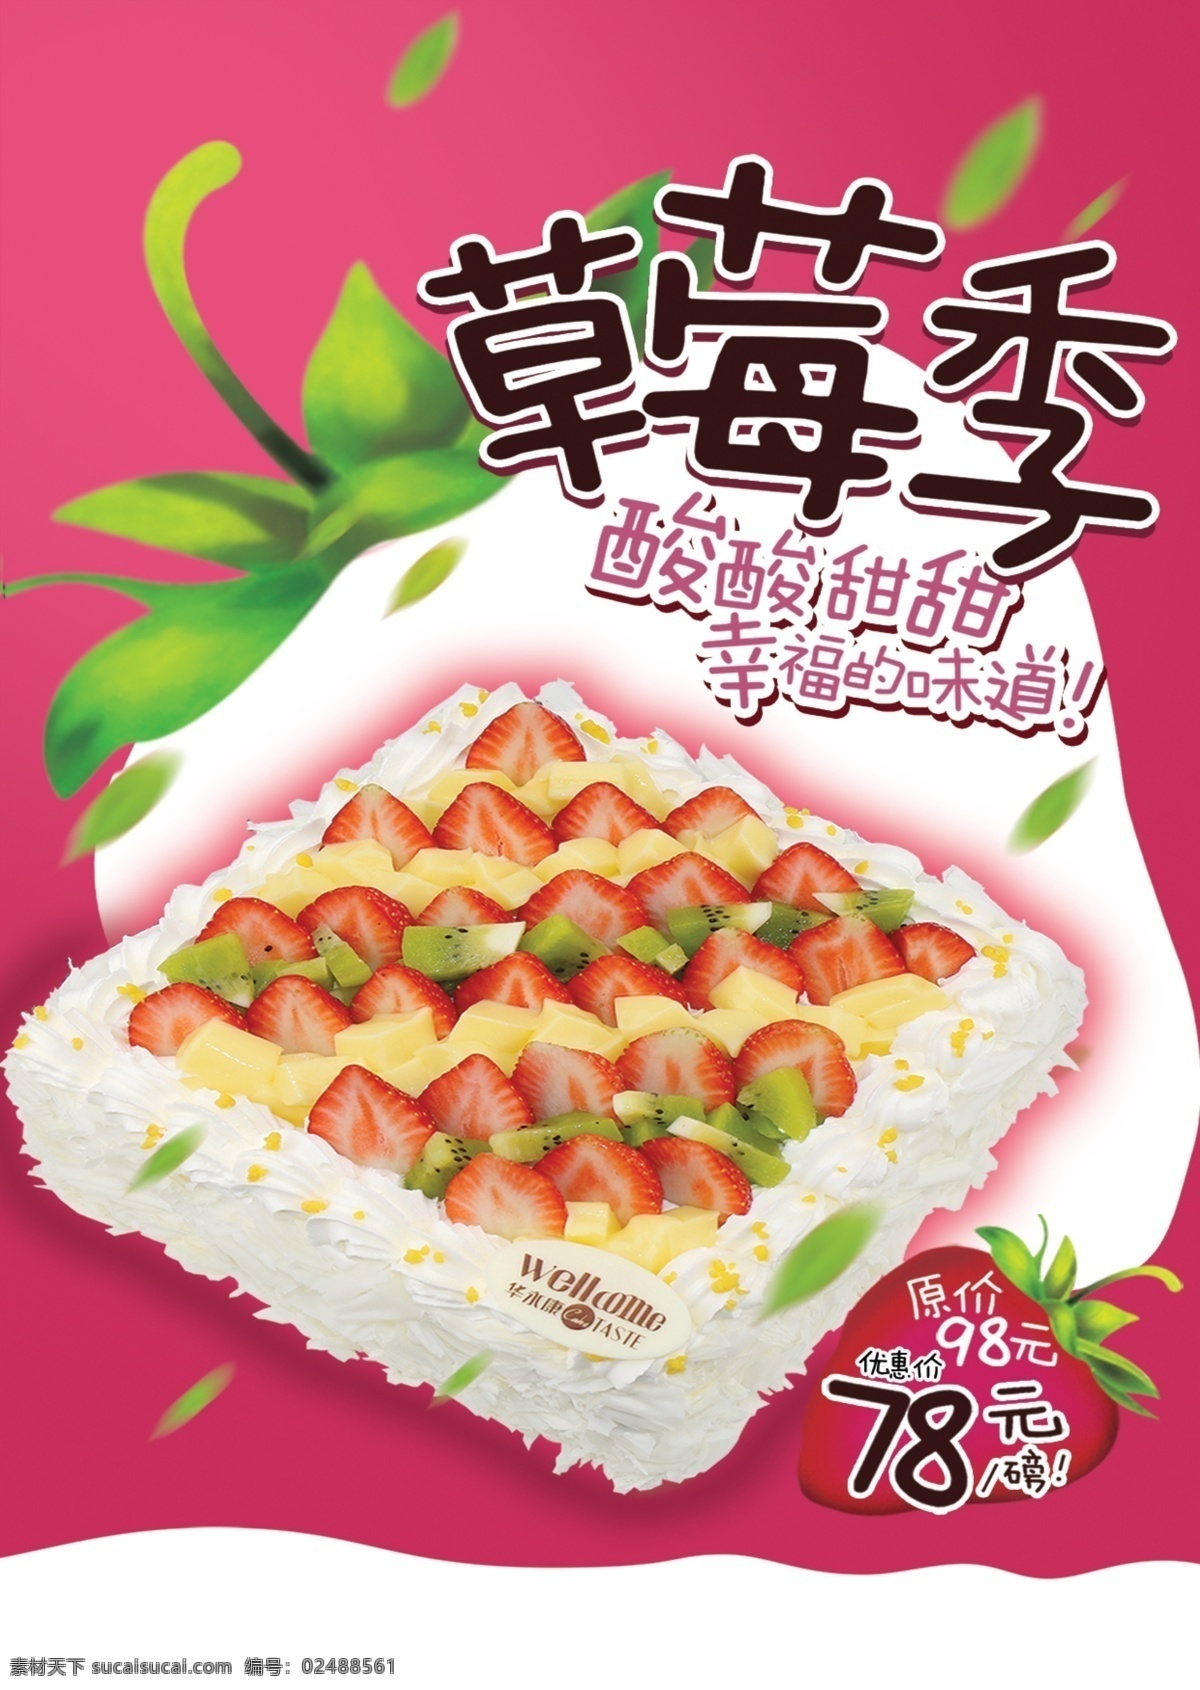 草莓蛋糕广告 草莓 蛋糕 甜品